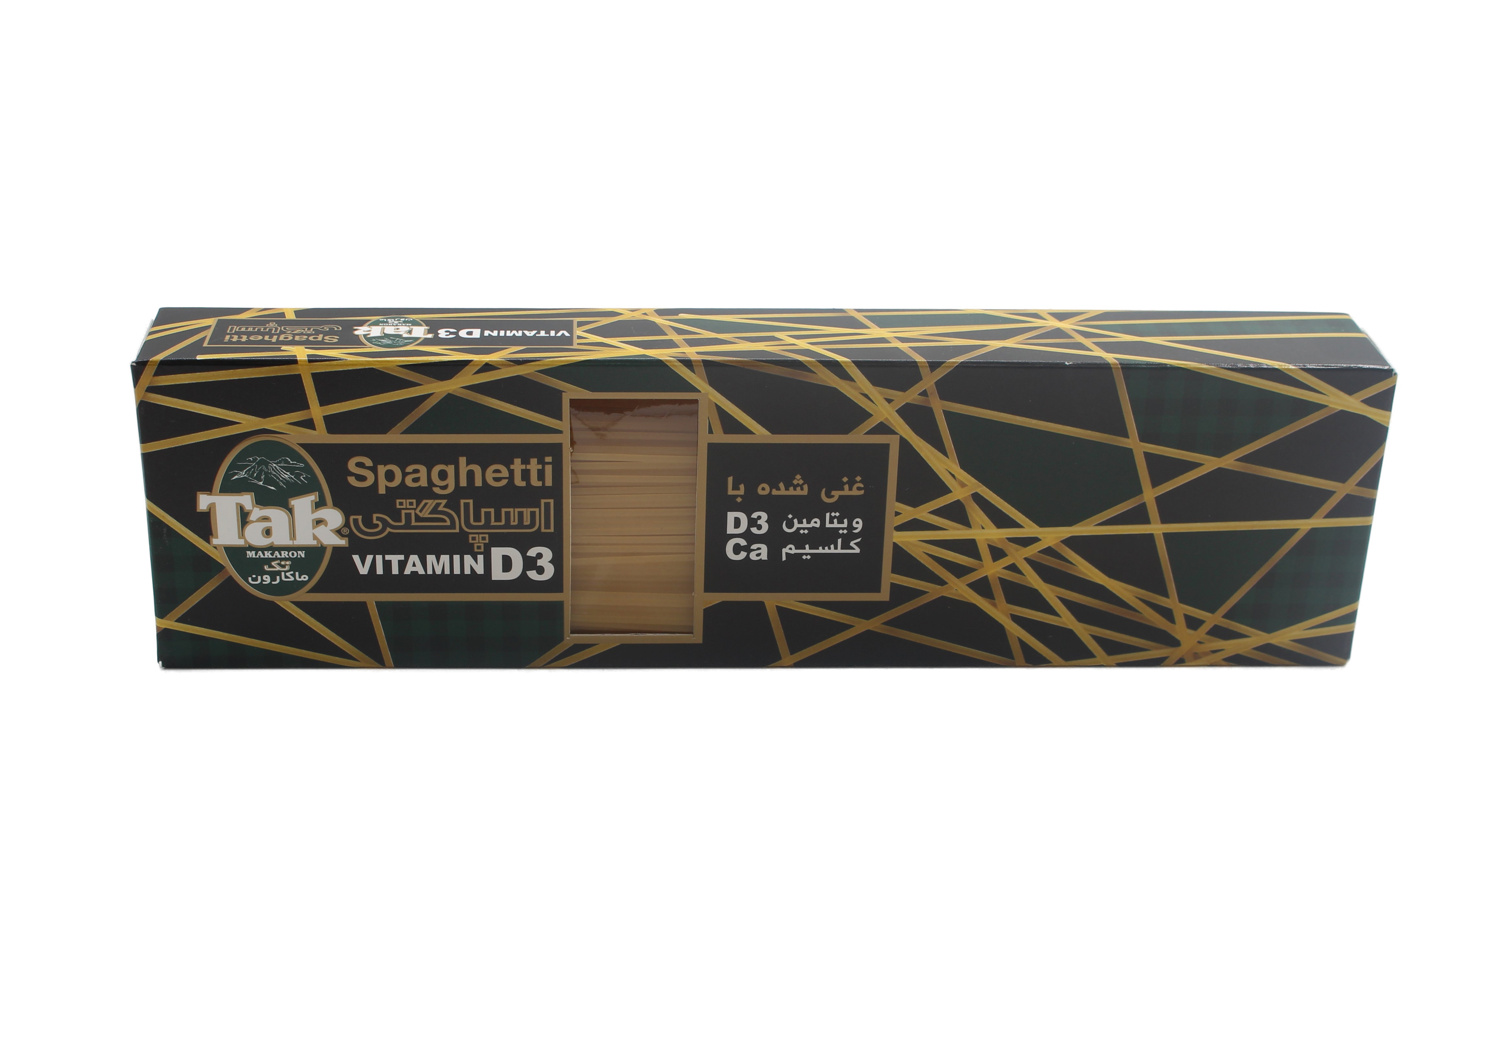 تک ماکارون اسپاگتی با ویتامبن دی جعبه ای500 گرم